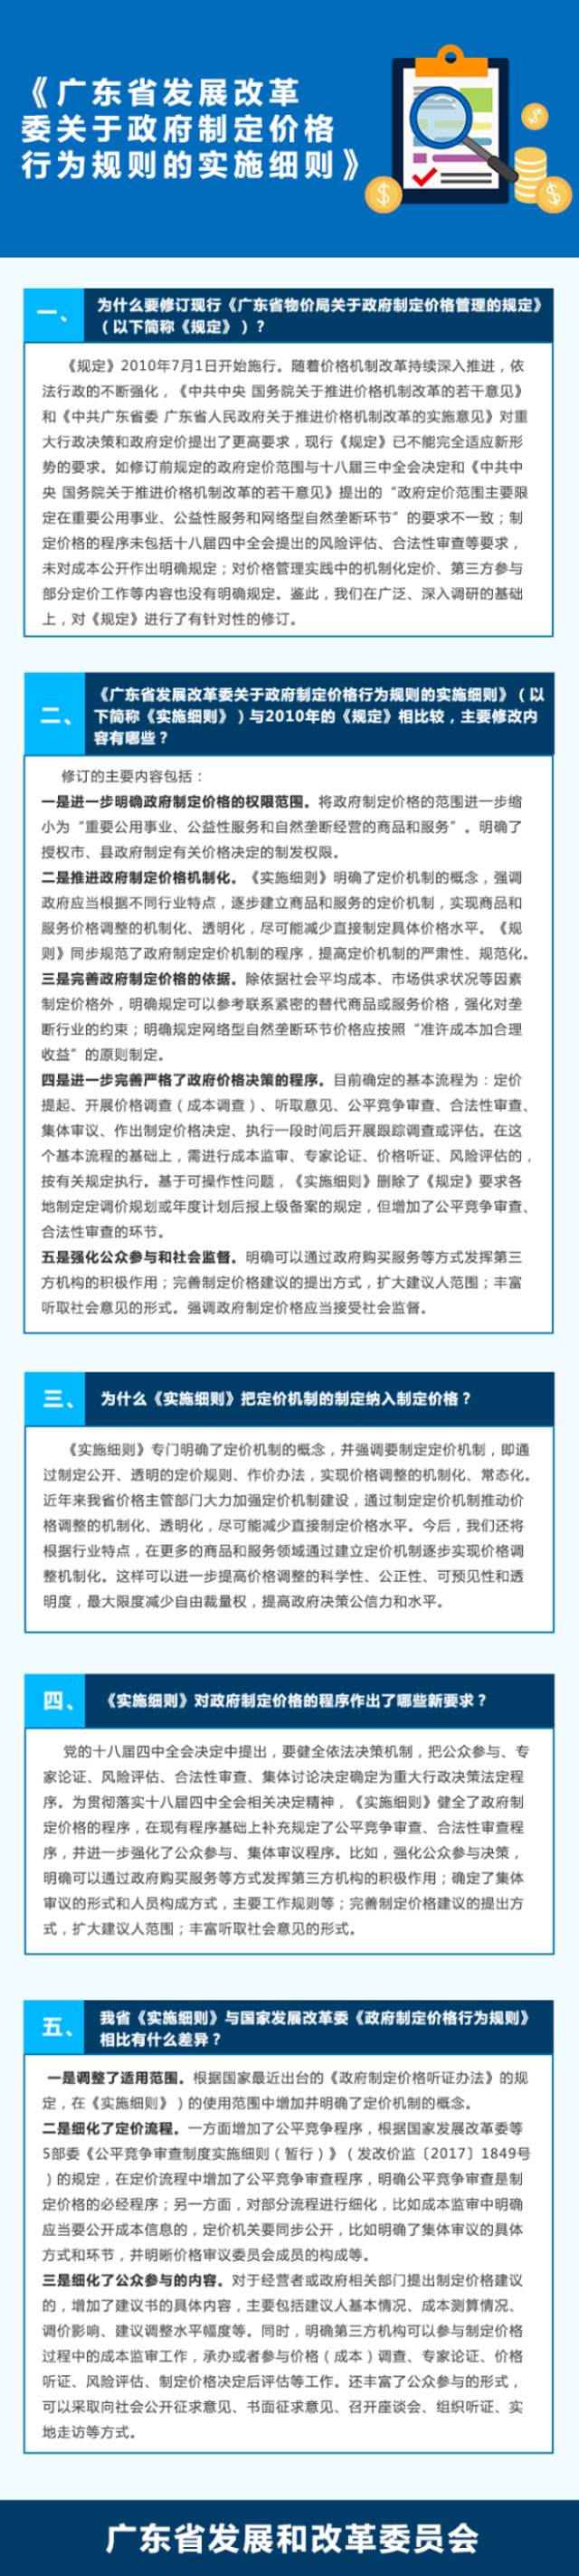 《广东省发展改革委关于政府制定价格行为规则的实施细则》.png